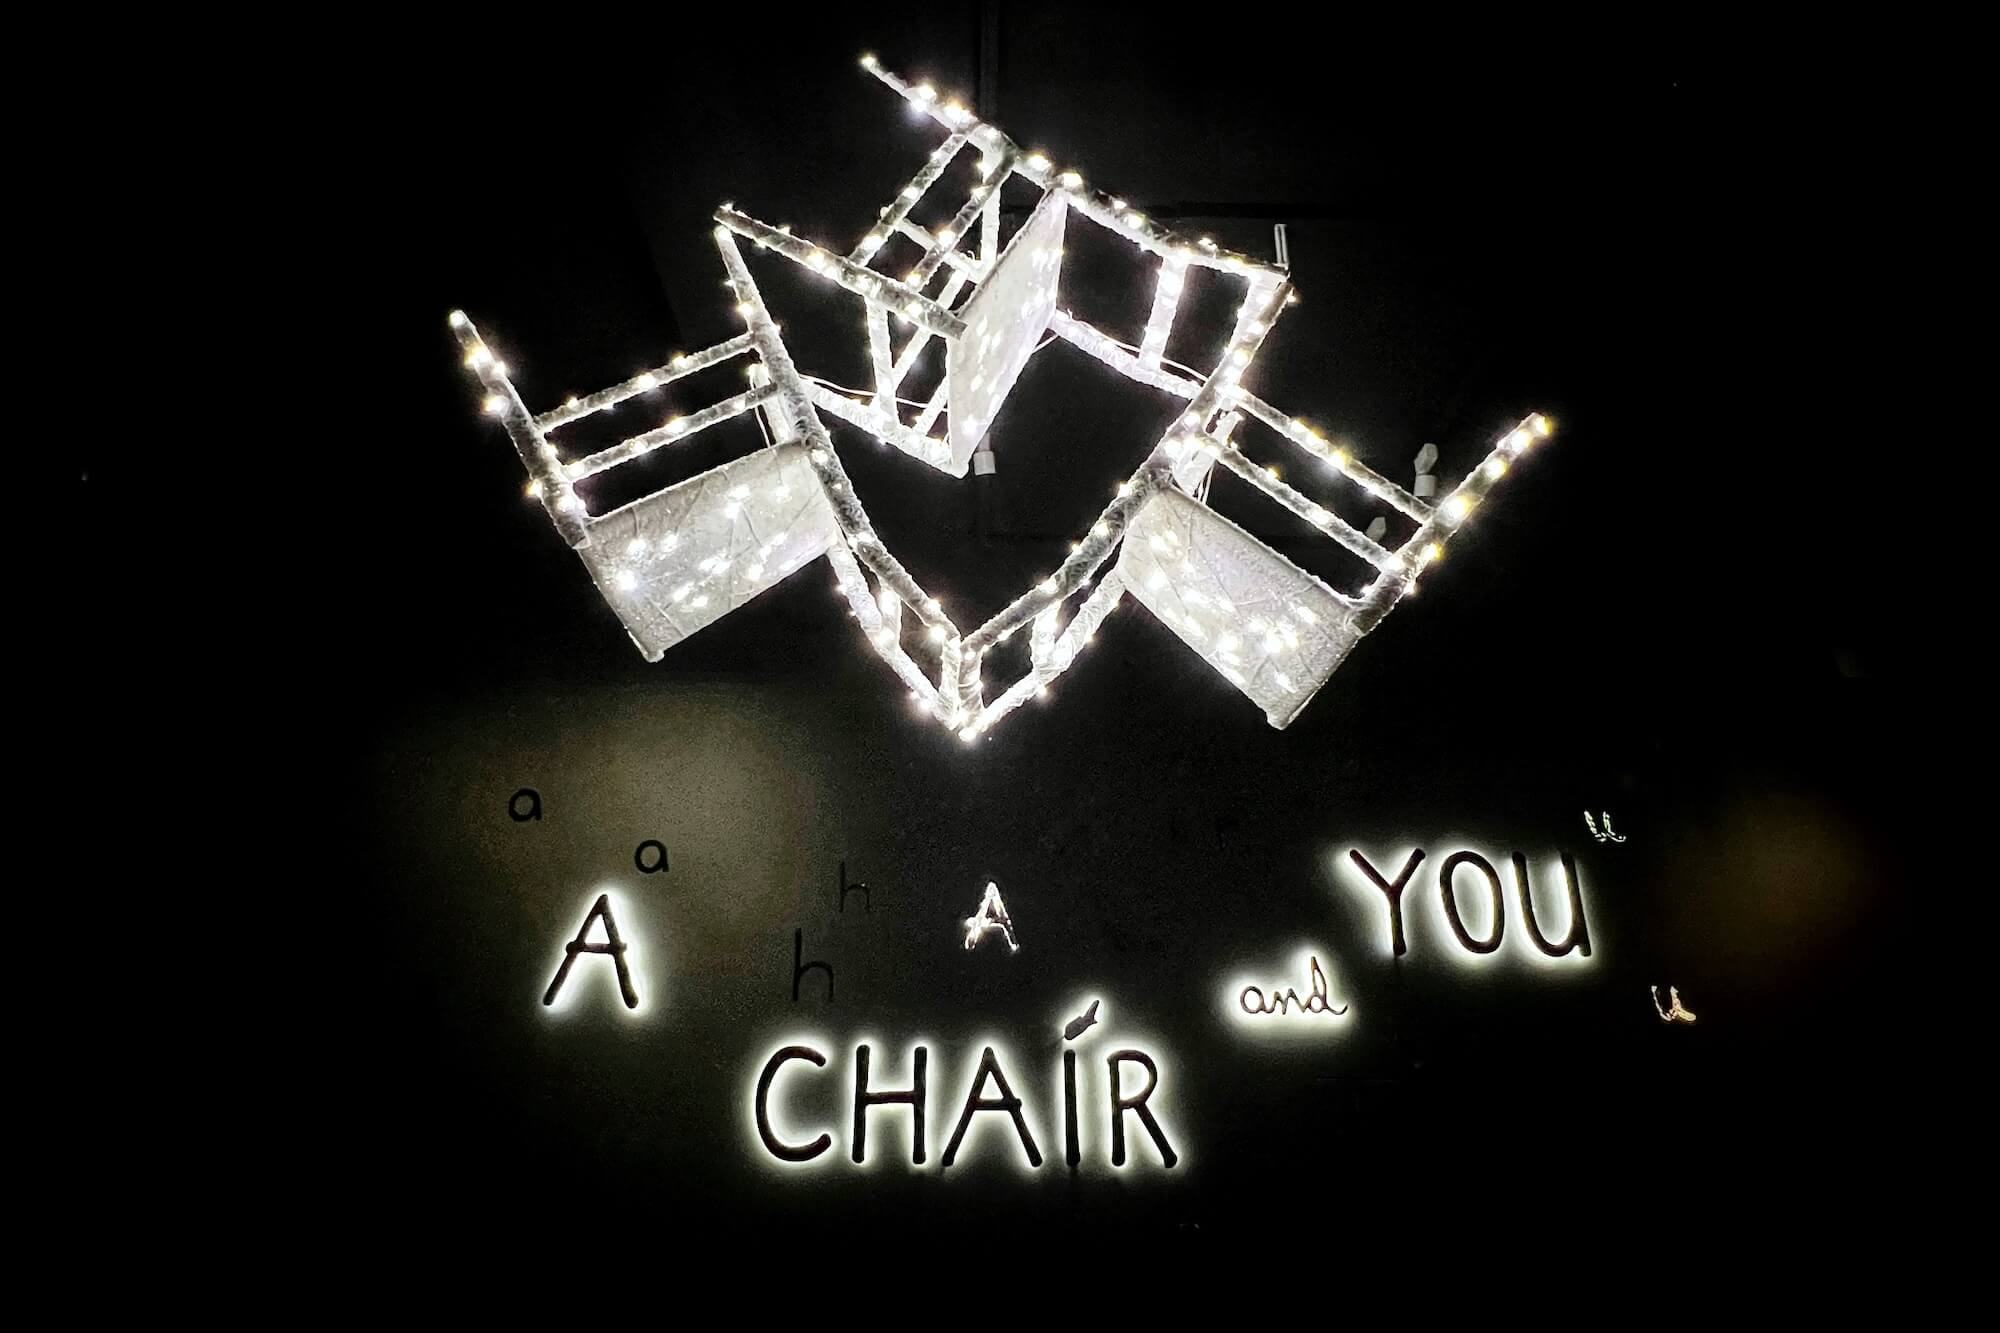 A Chair and You: Eine Ausstellung als Theater-Inszenierung